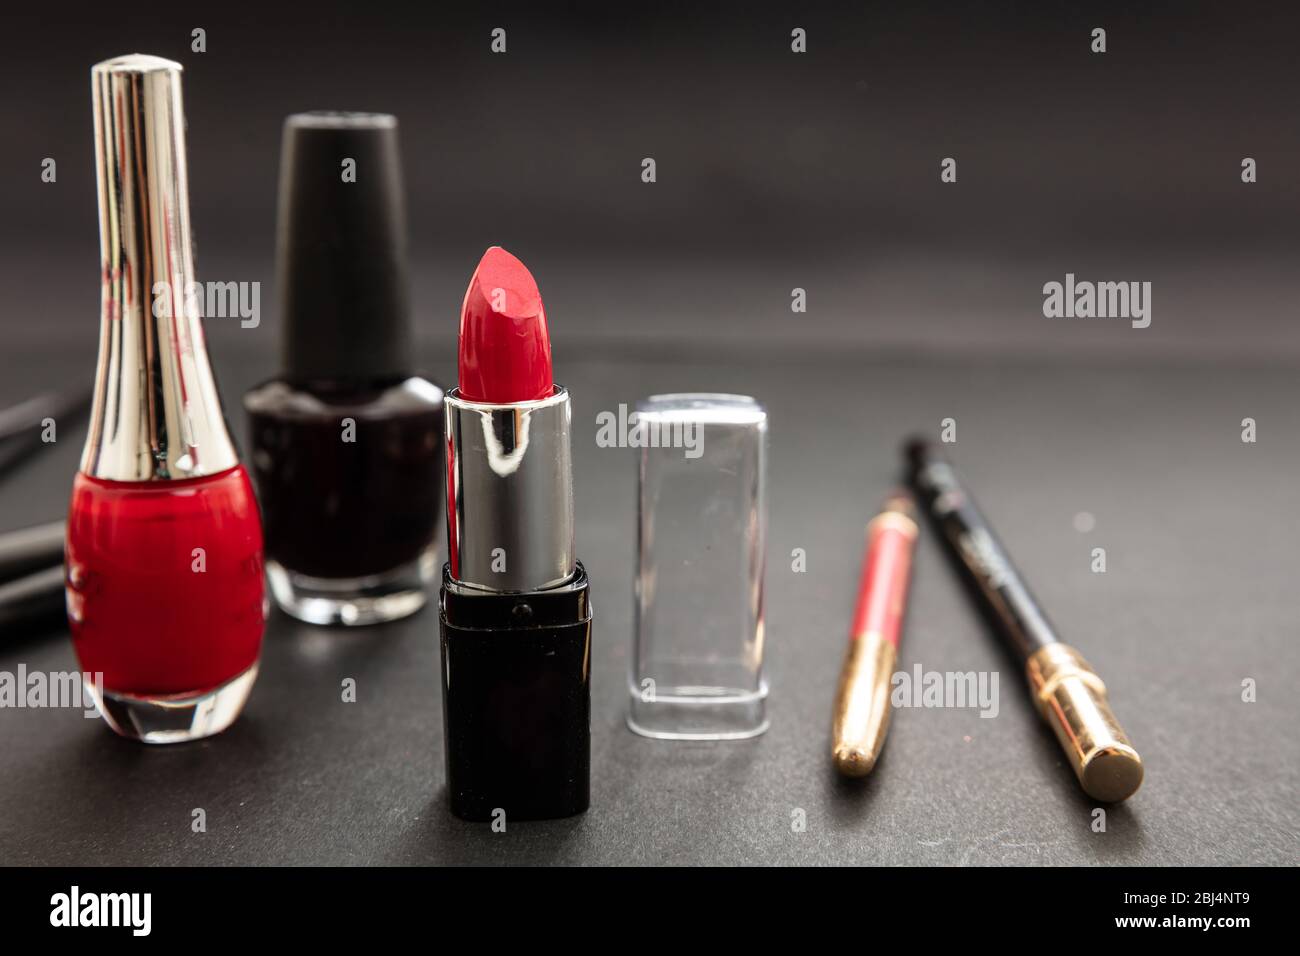 Kosmetikprodukte in Rot und Schwarz herstellen. Roter Lippenstift und nagellack, Augenstift und Bürsten vor schwarzem Farbhintergrund Stockfoto